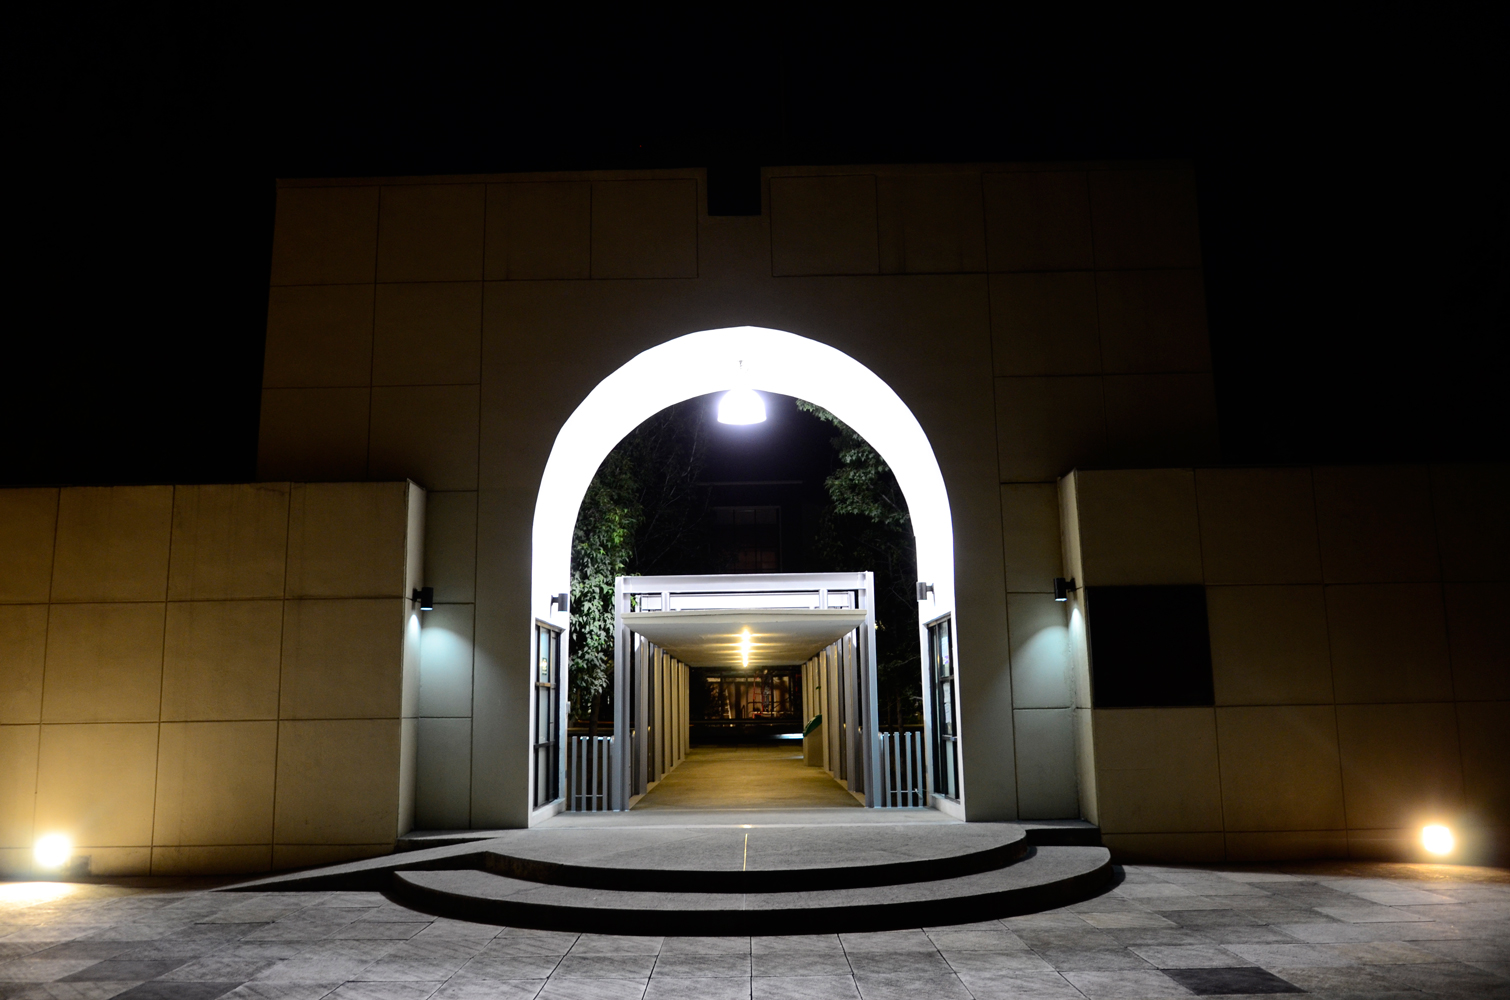 Entrada principal de noche, campus, Santa Teresa